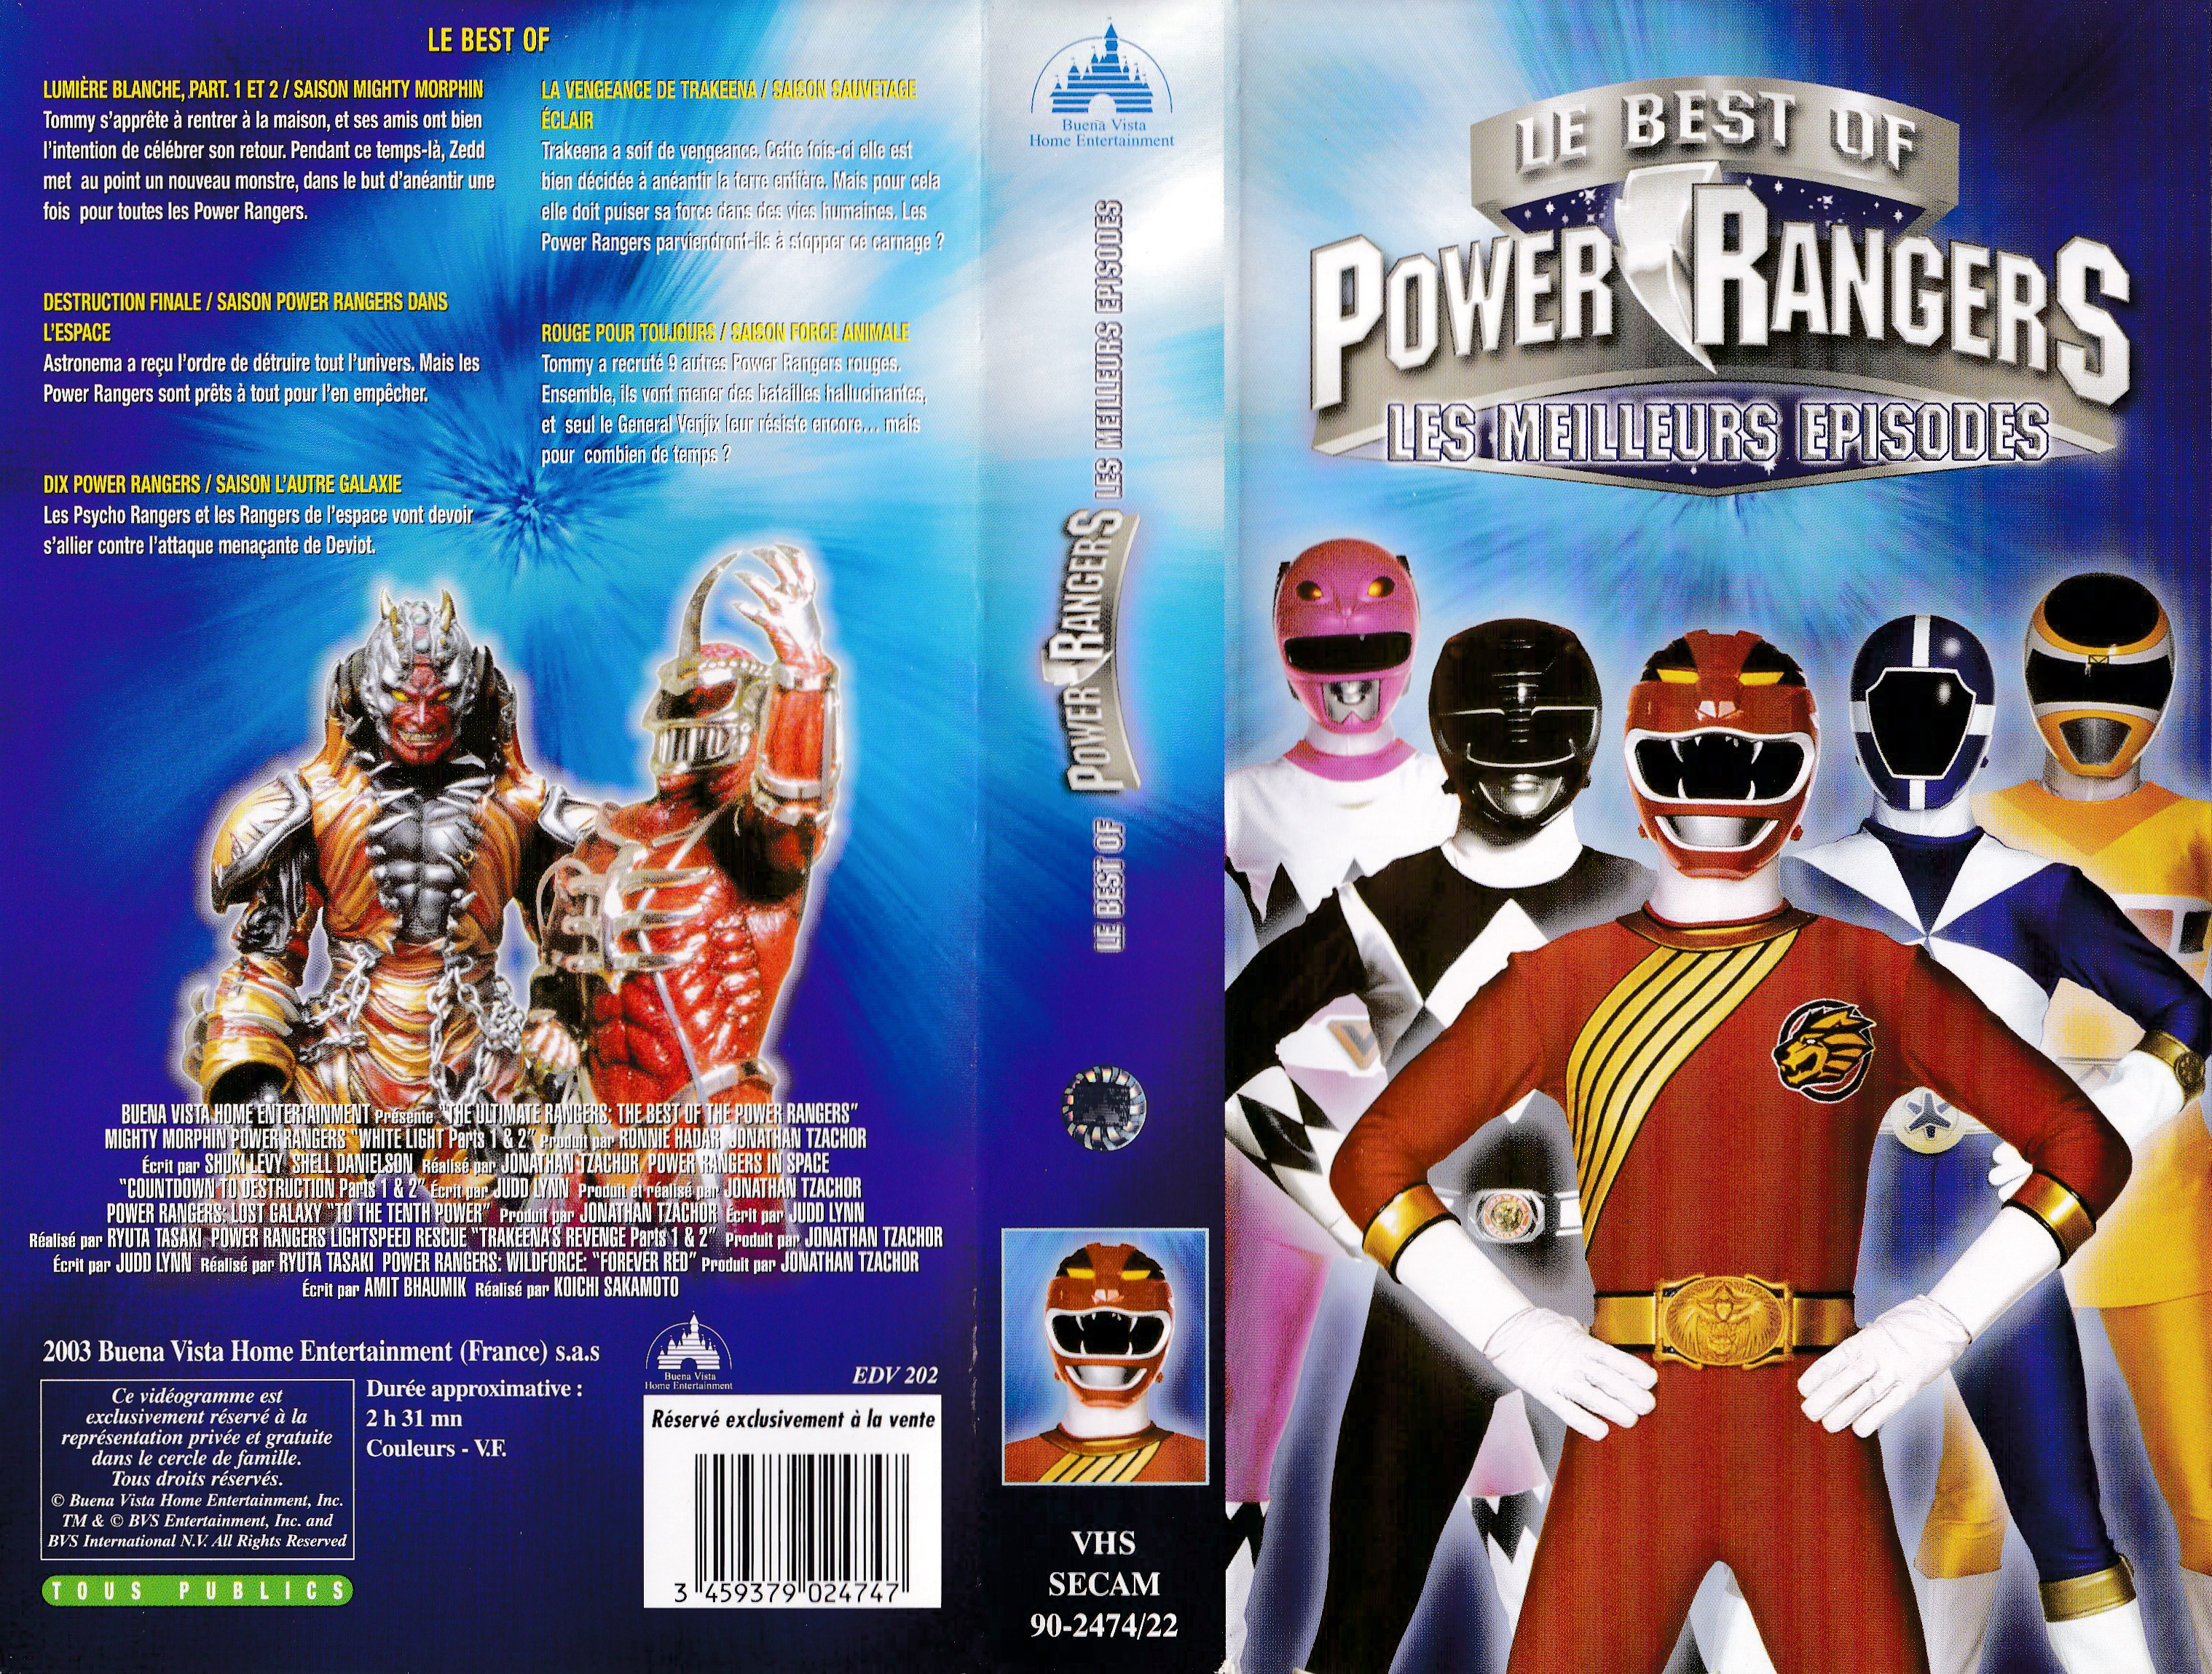 Le Best of Power Rangers - Les meilleurs épisodes